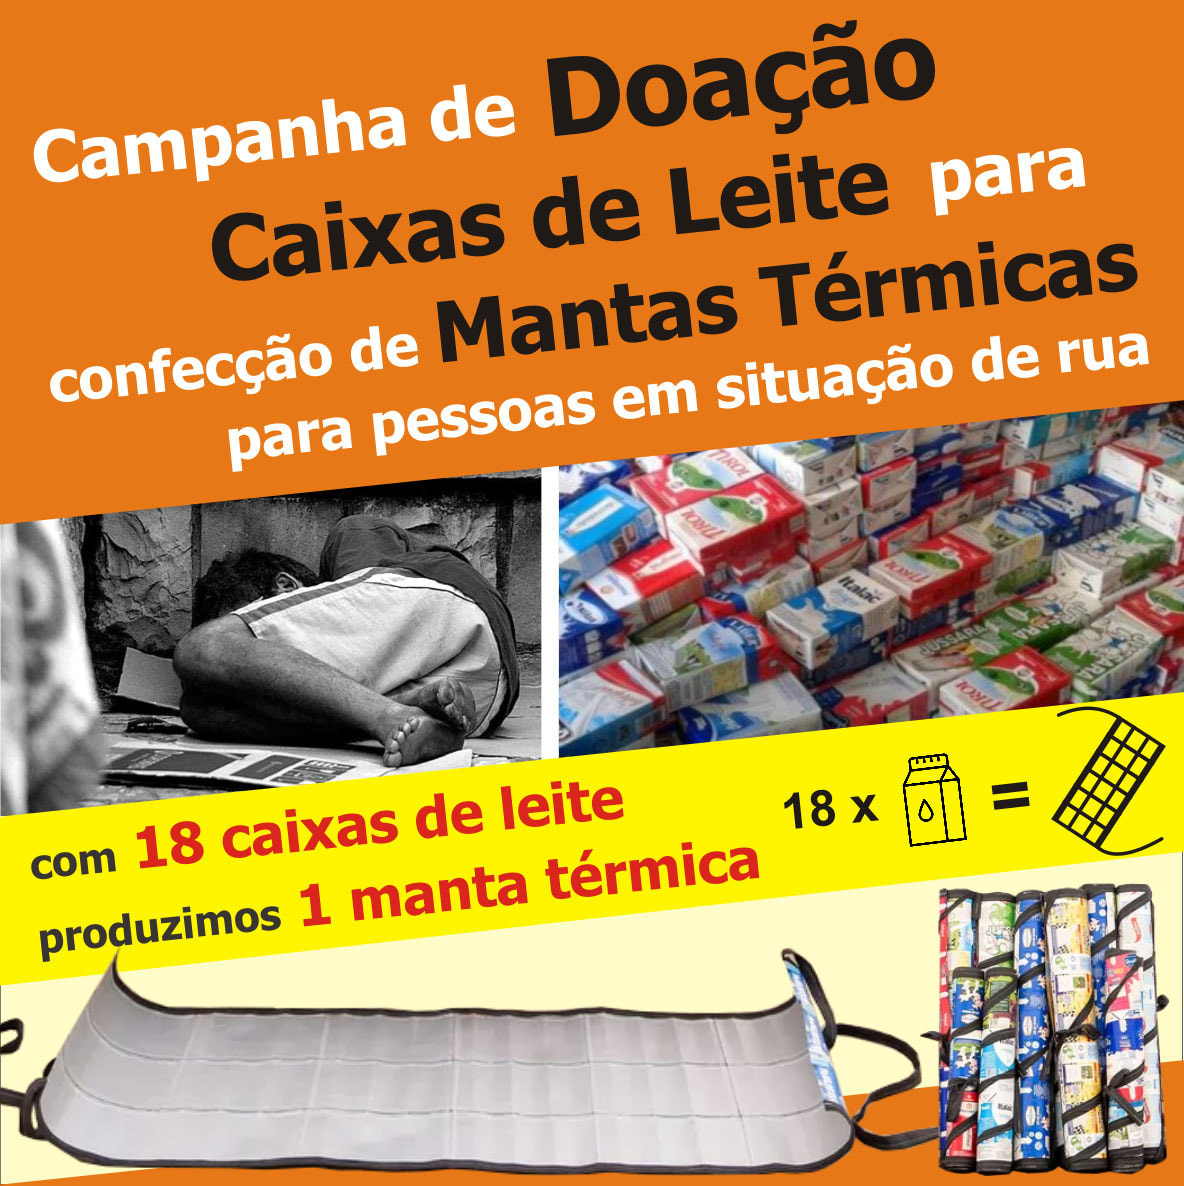 Colégio arrecada caixas de leite vazias para confecção de mantas térmicas para moradores em situação de rua.